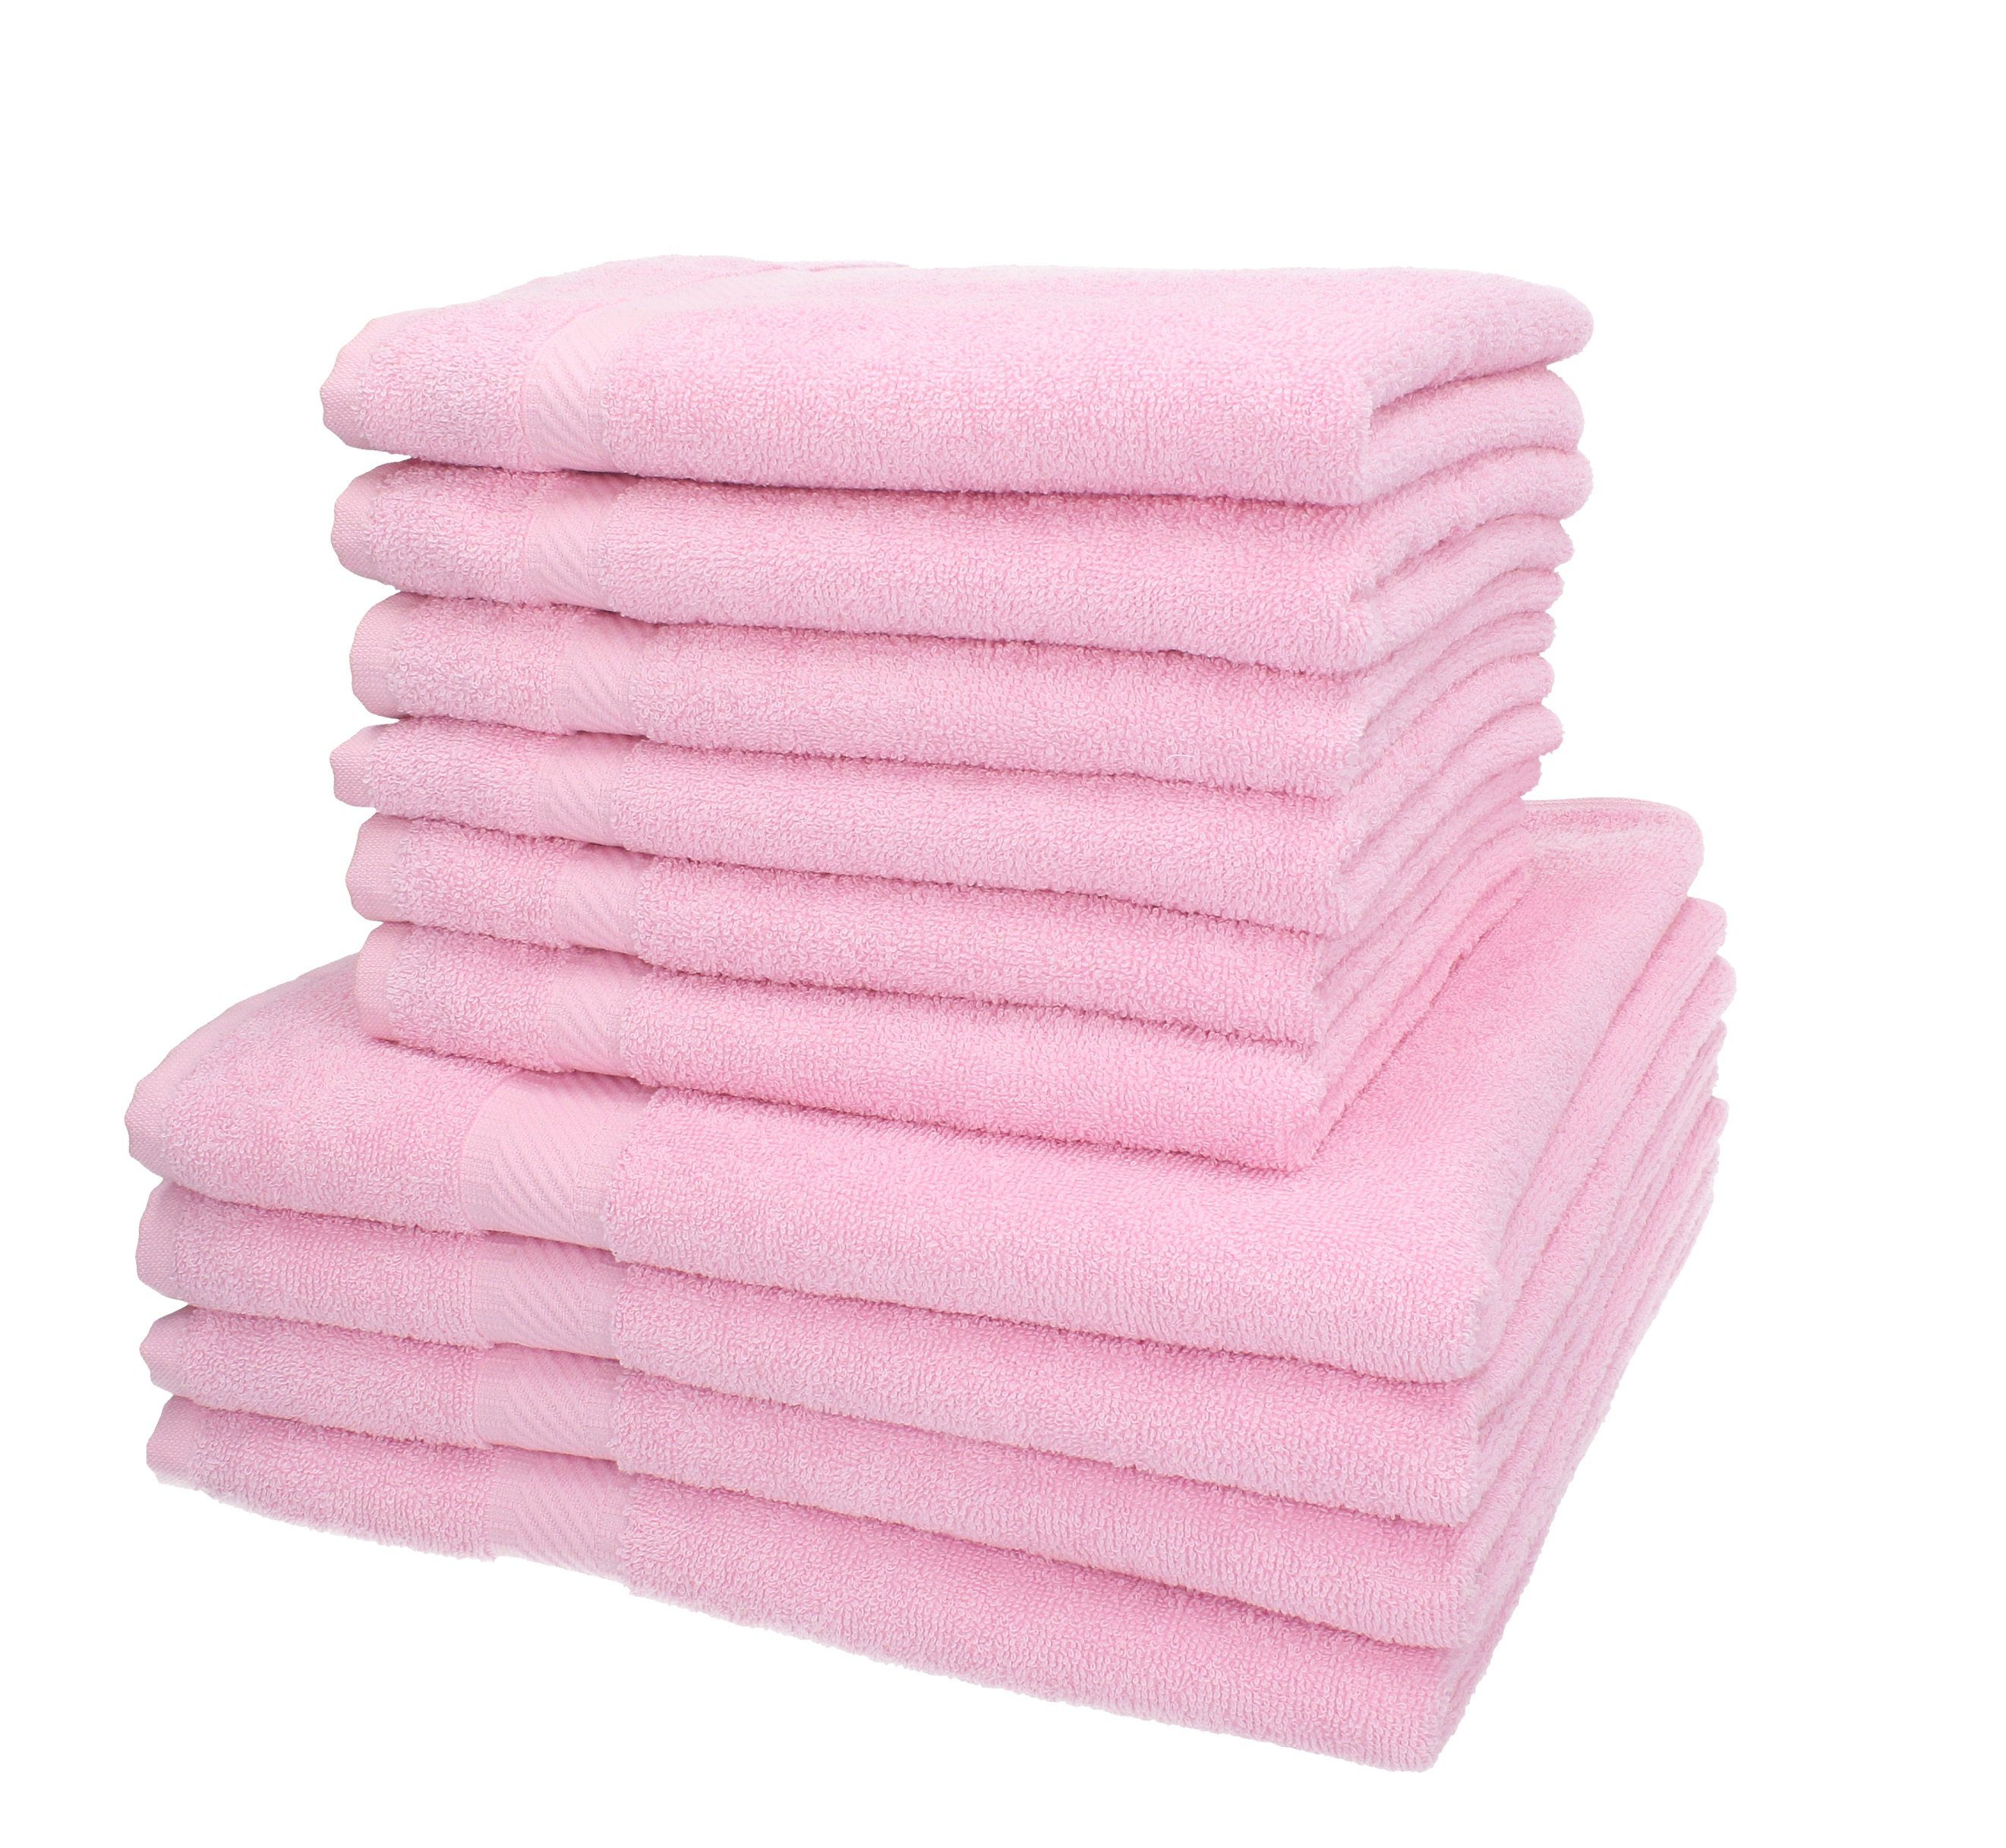 Betz Handtuch-Set 10-TLG. Handtuch Farbe Baumwolle rosé, Set Palermo 100%